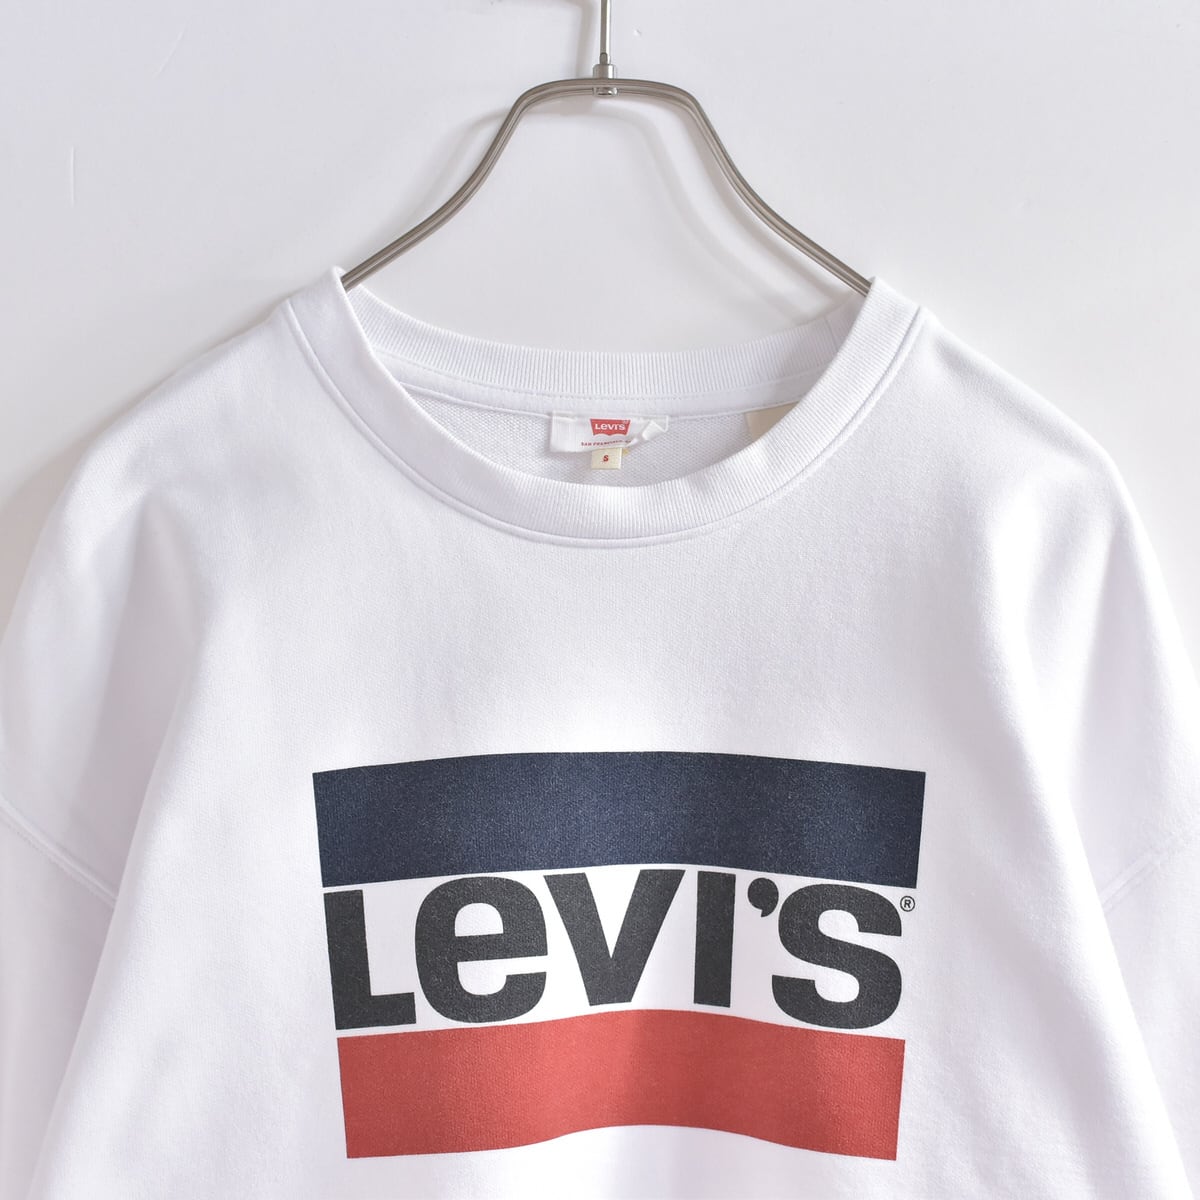 00s～ Levi's リーバイス ロゴプリント スウェットシャツ トレーナー ...